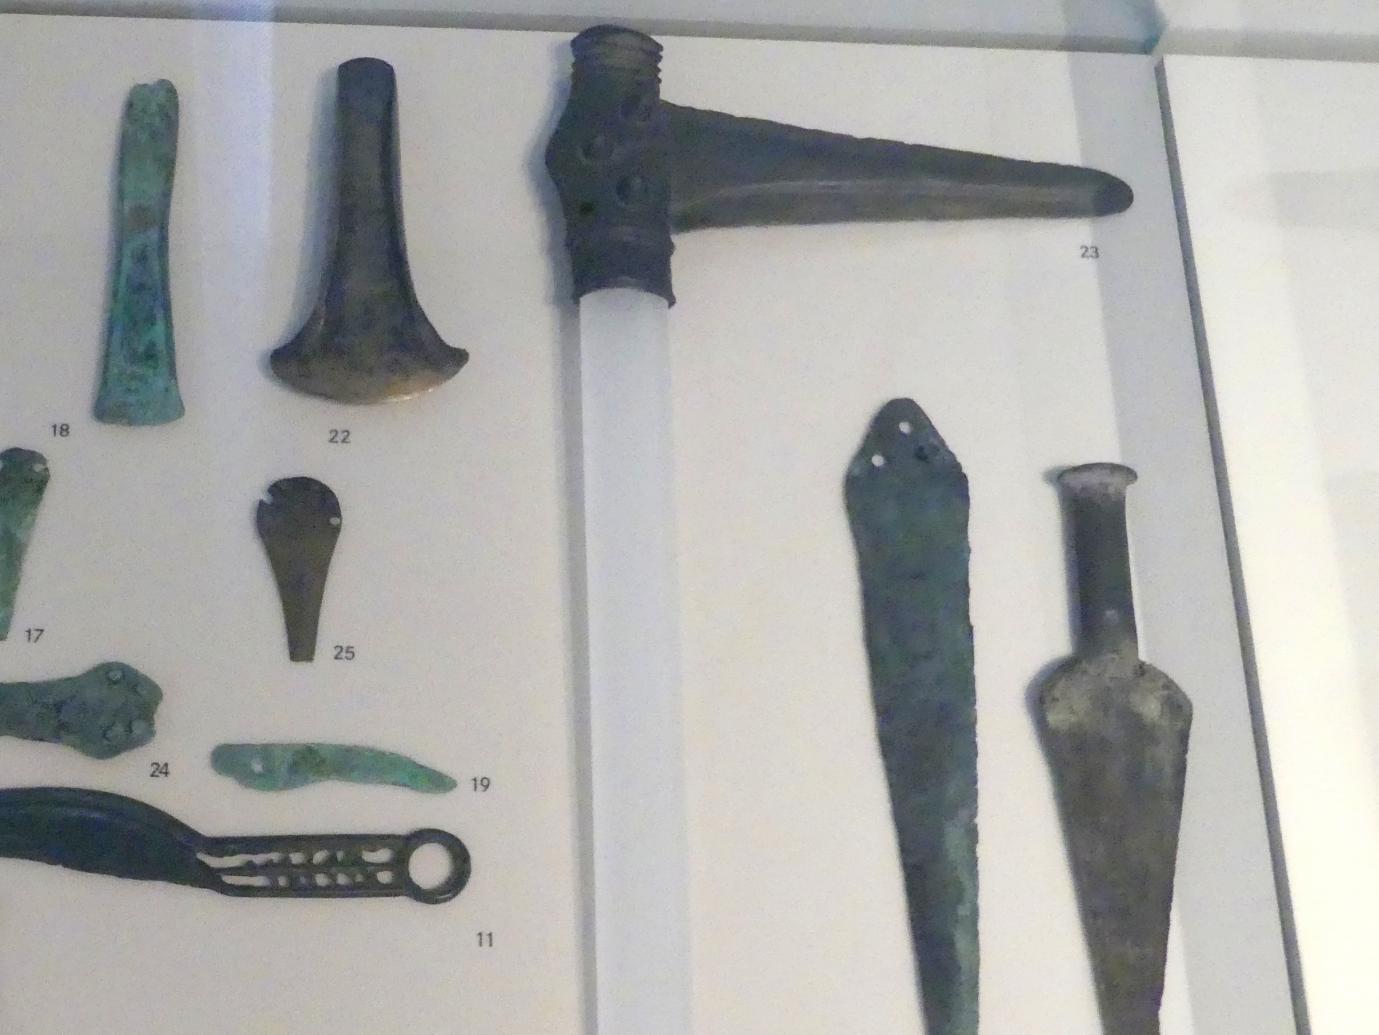 Stabdolch, Frühe Bronzezeit, 3365 - 1200 v. Chr., 1800 - 1600 v. Chr., Bild 1/2